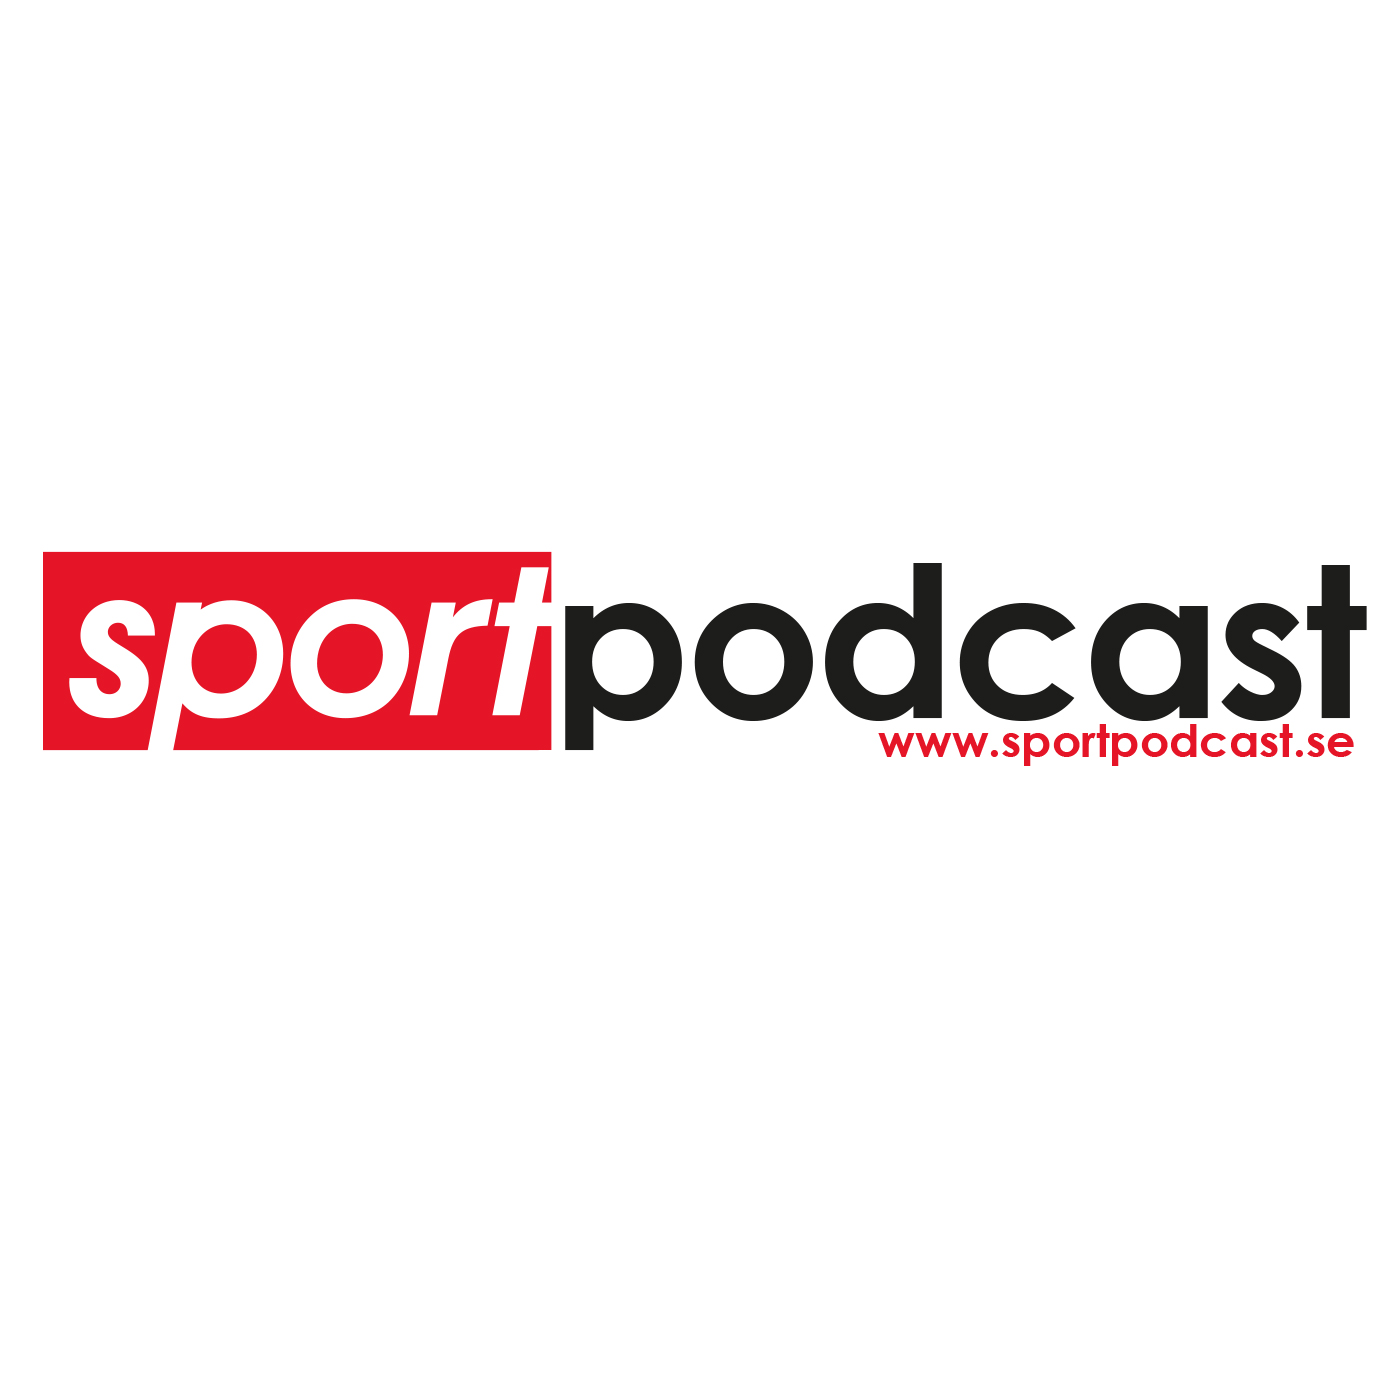 Sportpodcast